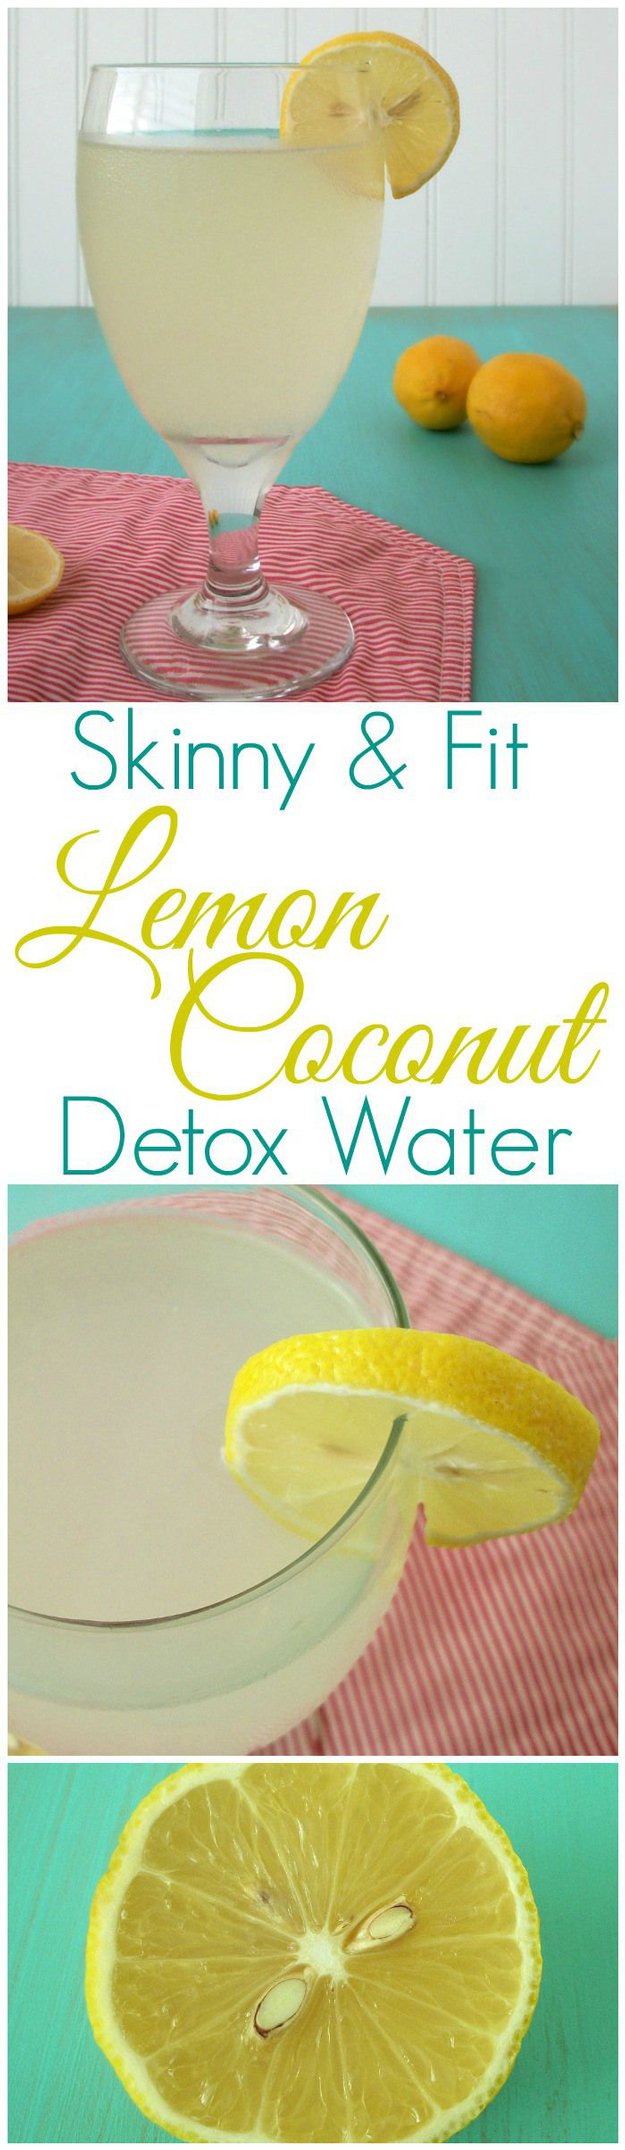 Skinny Detox Water for Metabolism | http://diyready.com/diy-recipes-detox-waters/